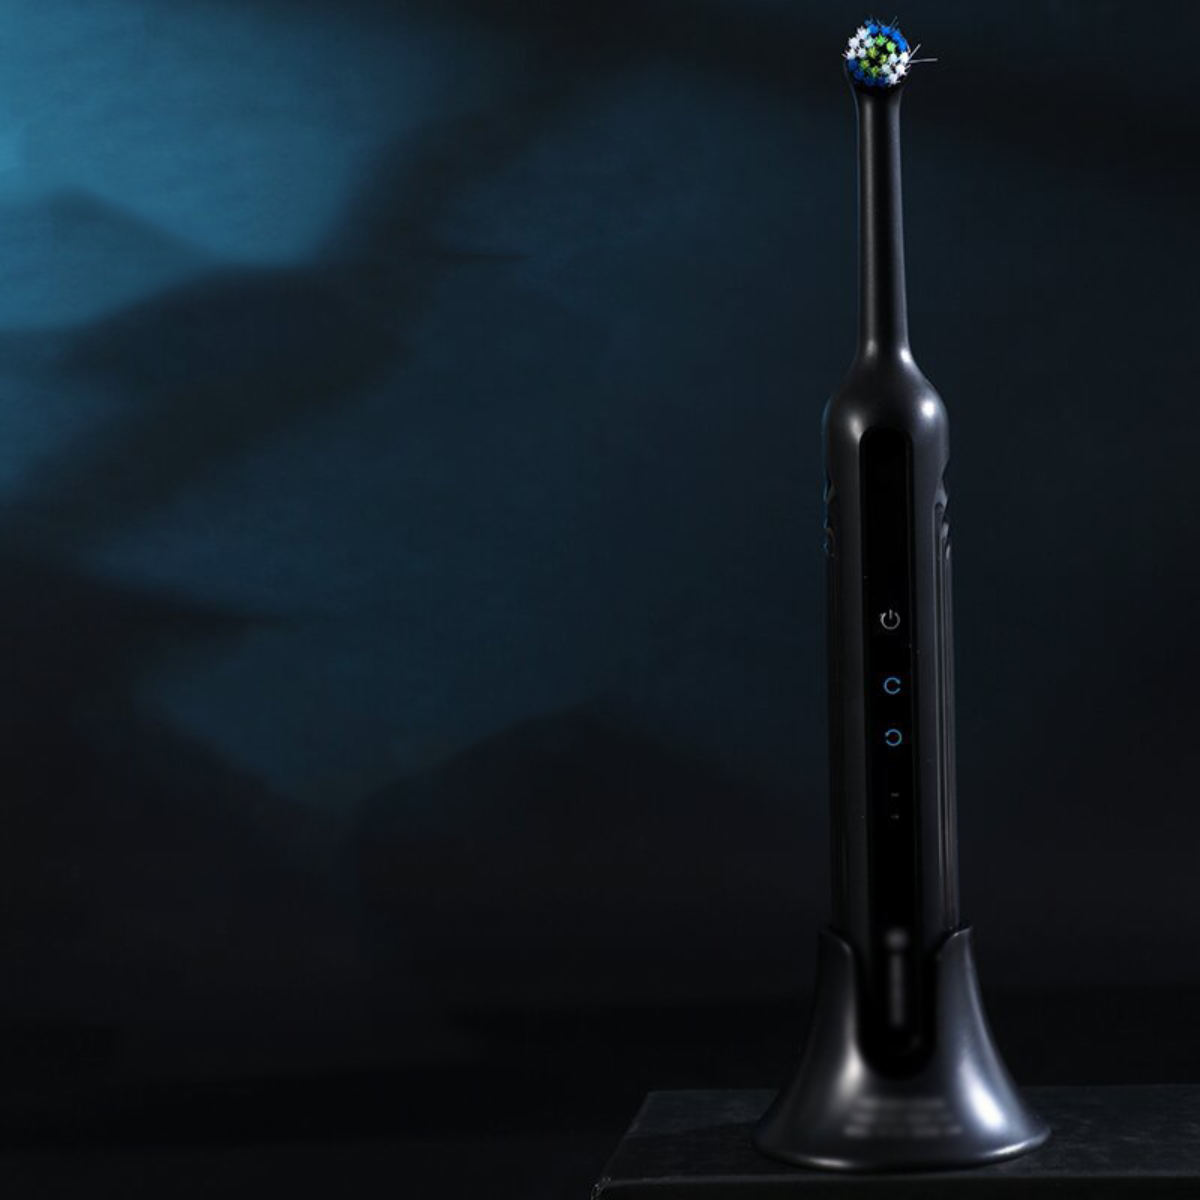 LACAMAX Elektrische Zahnbürste, 360° Drehkopf, mehrere Wasserdicht und in Leise Zahnbürste Schwarz Richtungen, Reinigung Elektrische